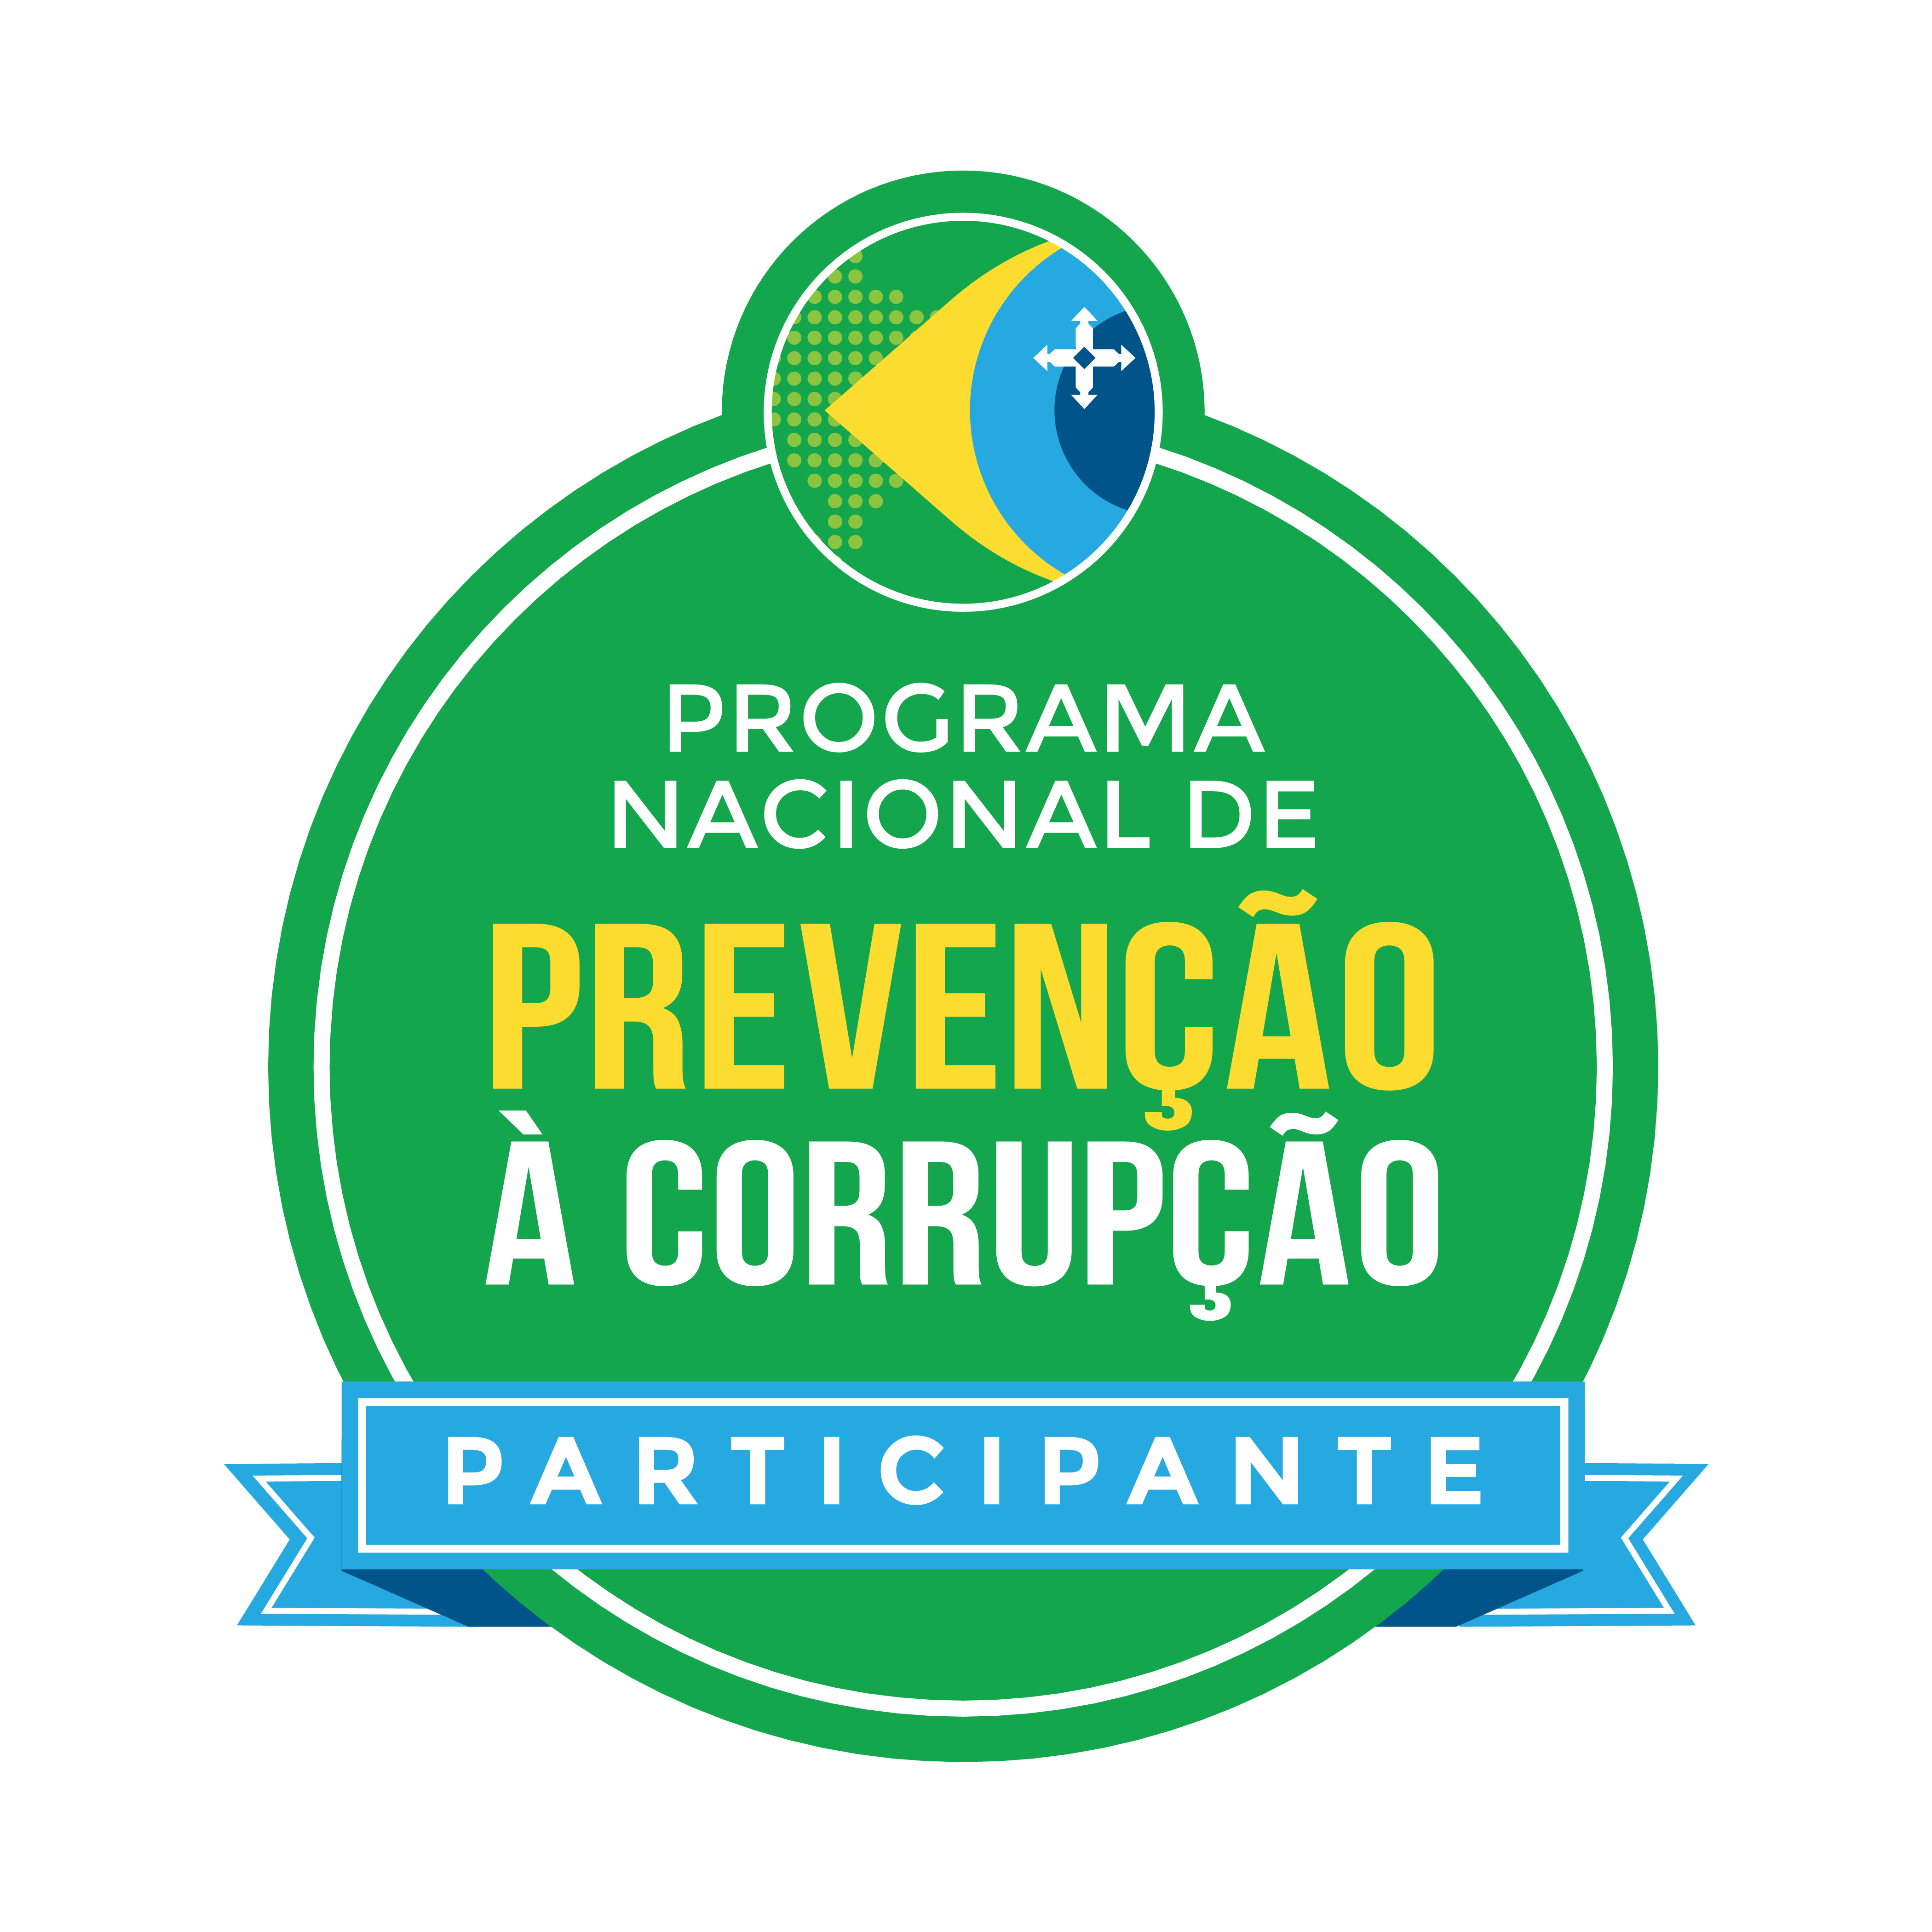 Programa nacional de prevenção à corrupção. Participe.